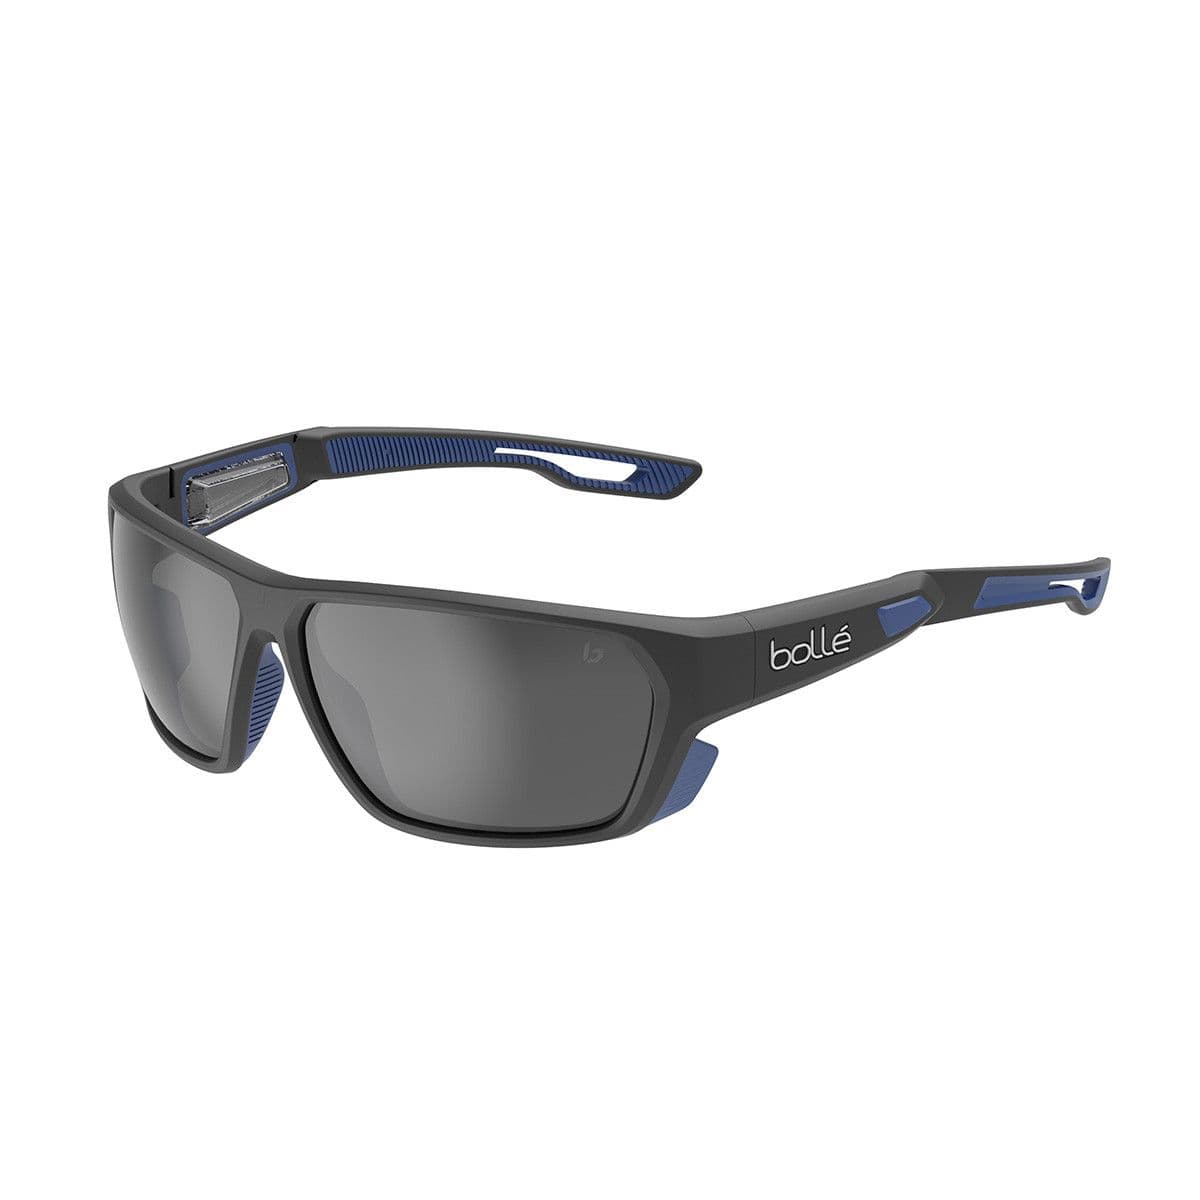 Bolle Airfin Sunglasses